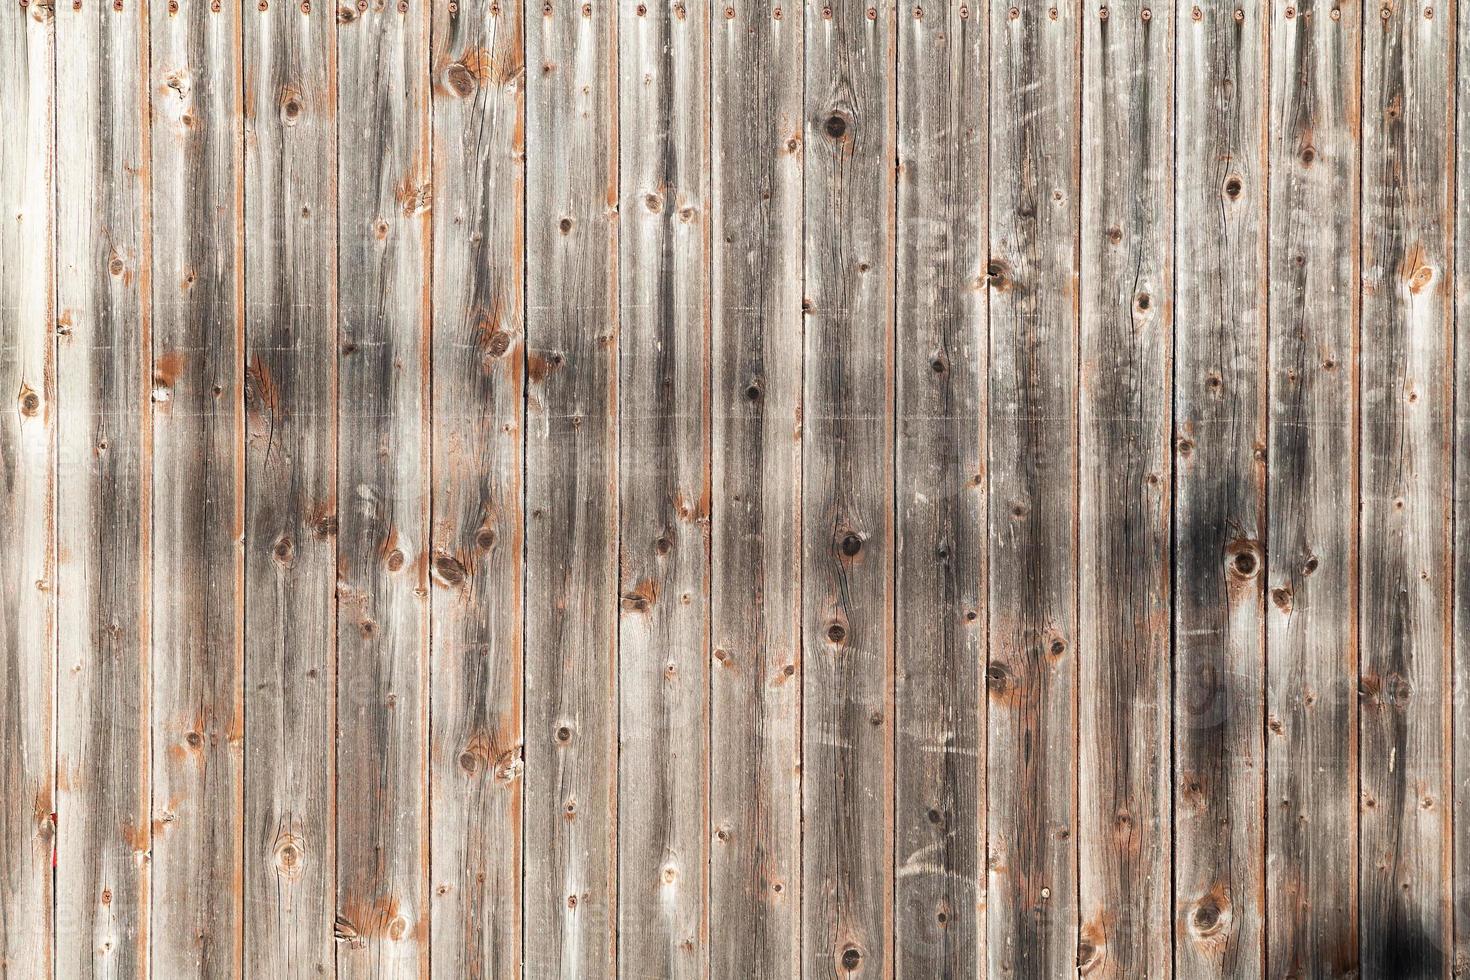 textura abstracta de madera. telón de fondo de superficie grunge. patrón de efecto de madera sucia. fondo material. foto